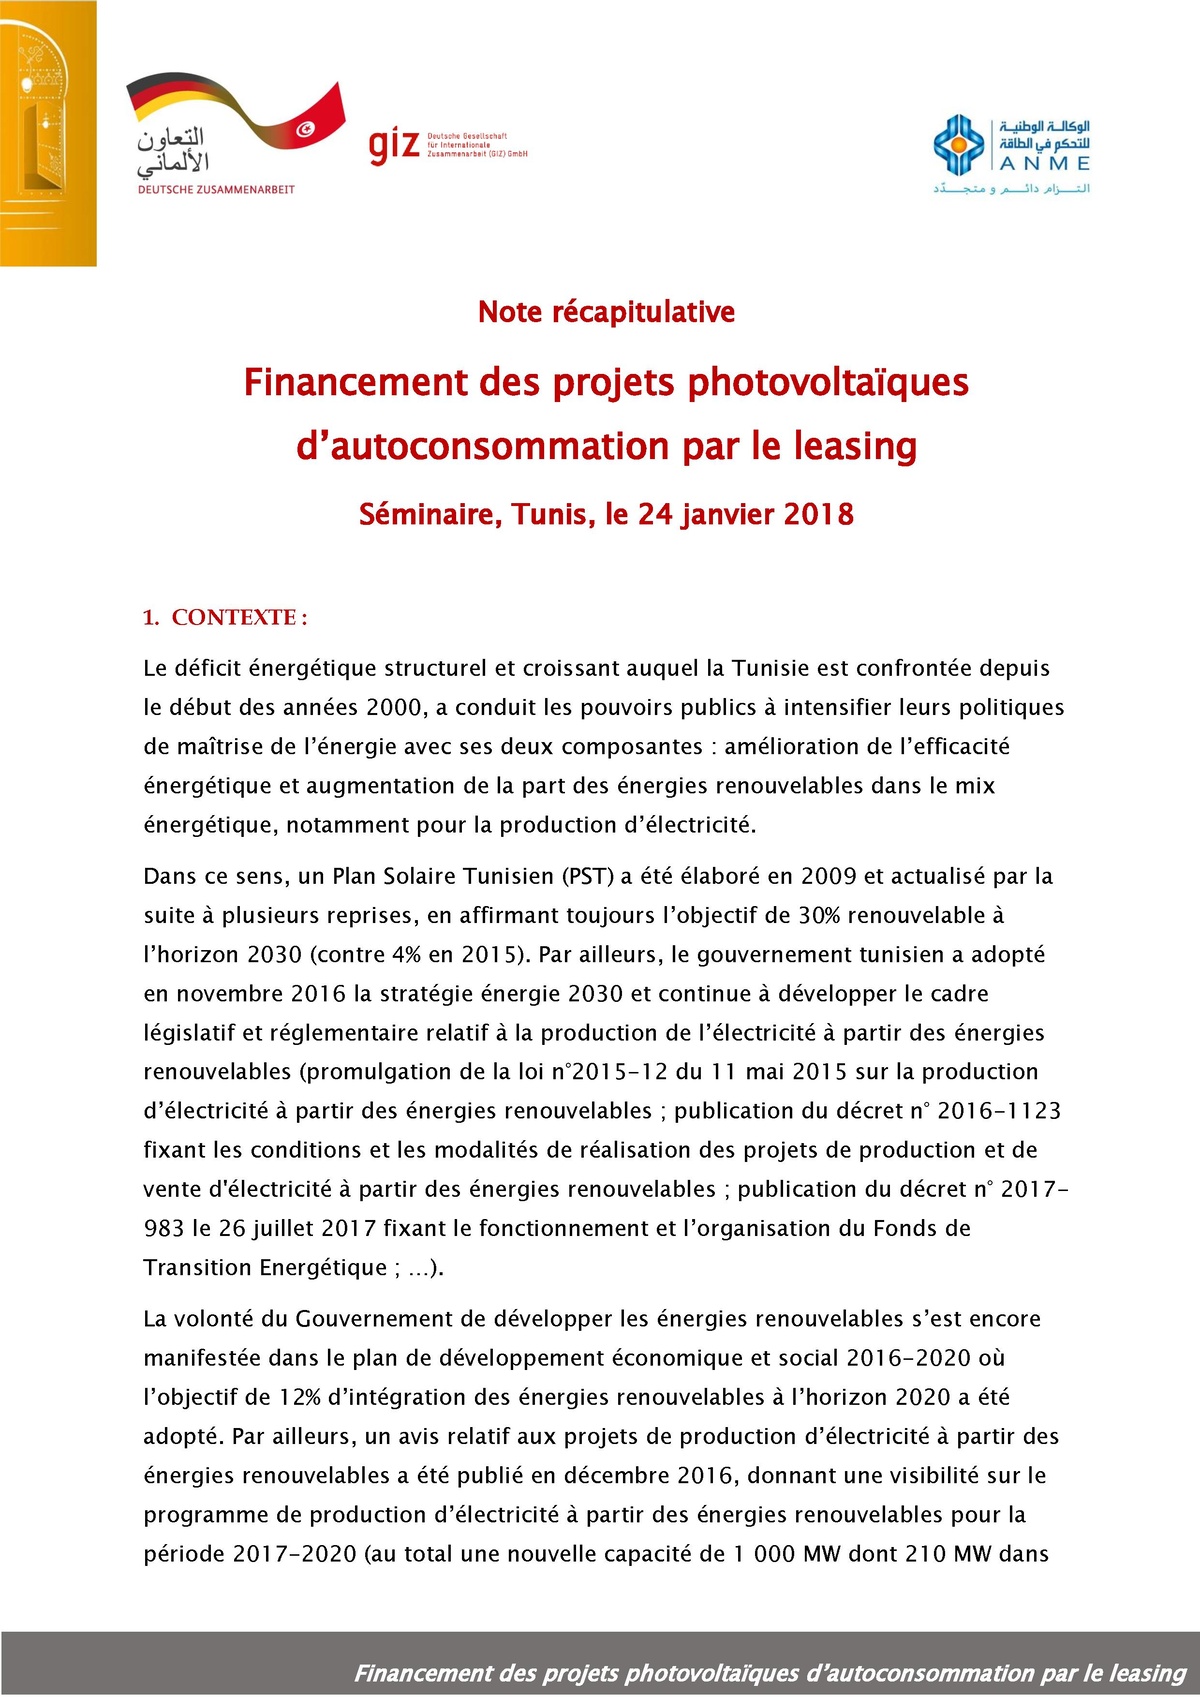 File Note Sur Le Programme Du S minaire Financement Du PV Non 